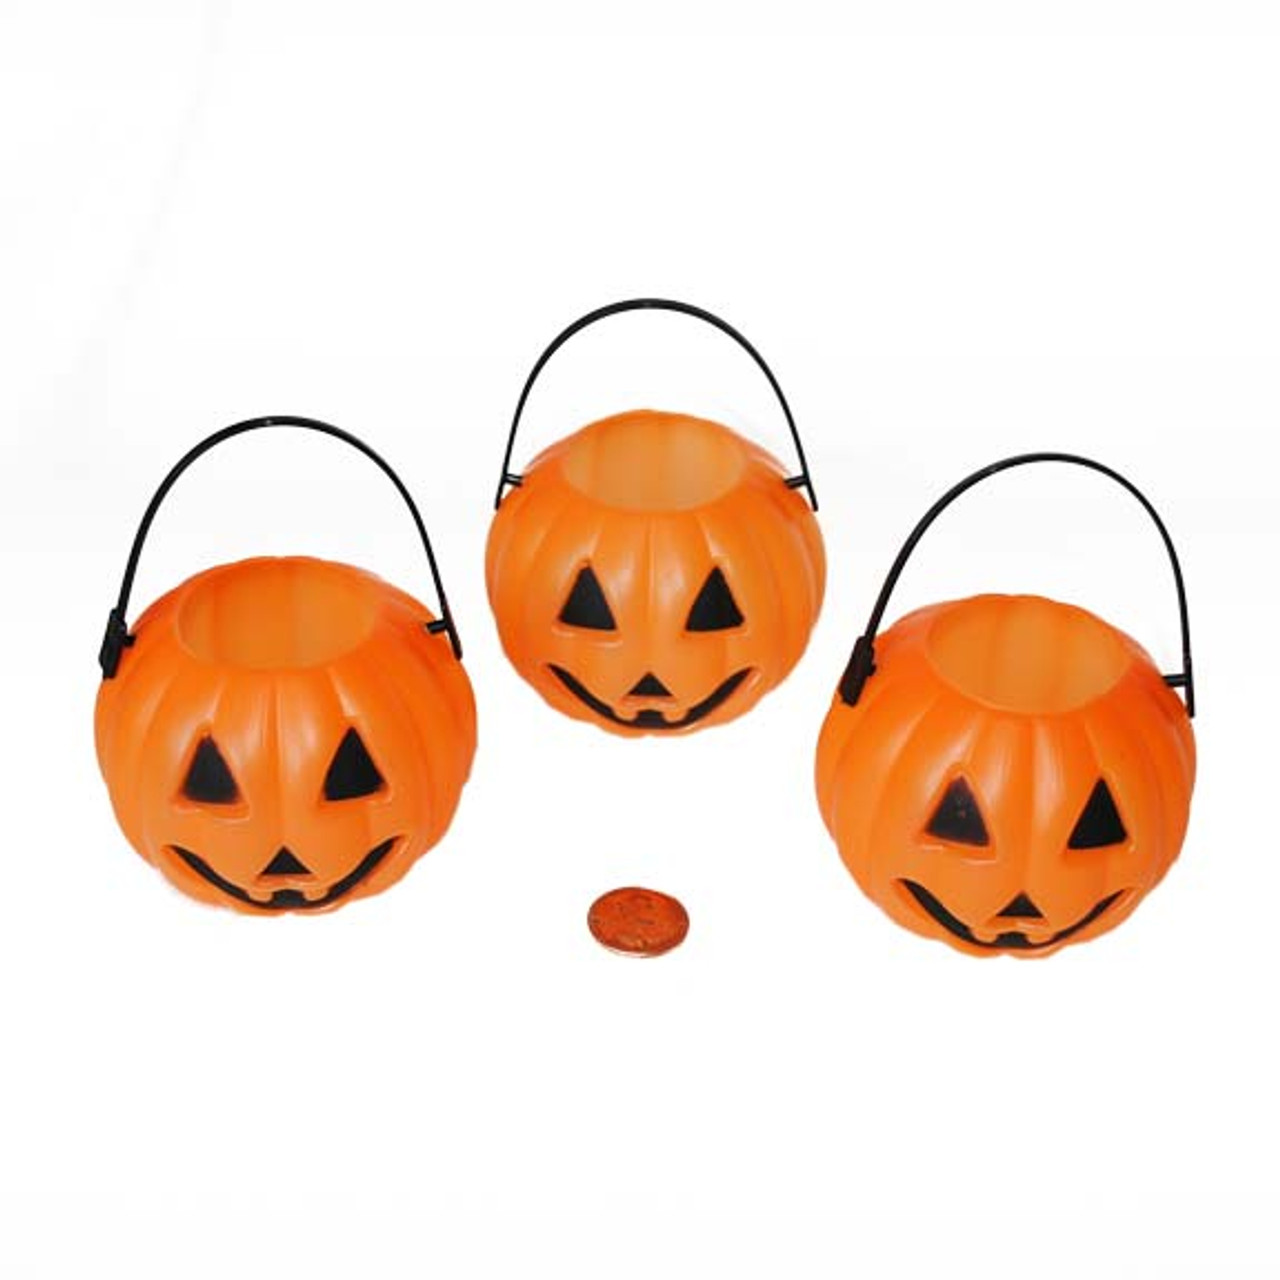 Mini Plastic Pumpkin Bucket Fill with Halloween fun!